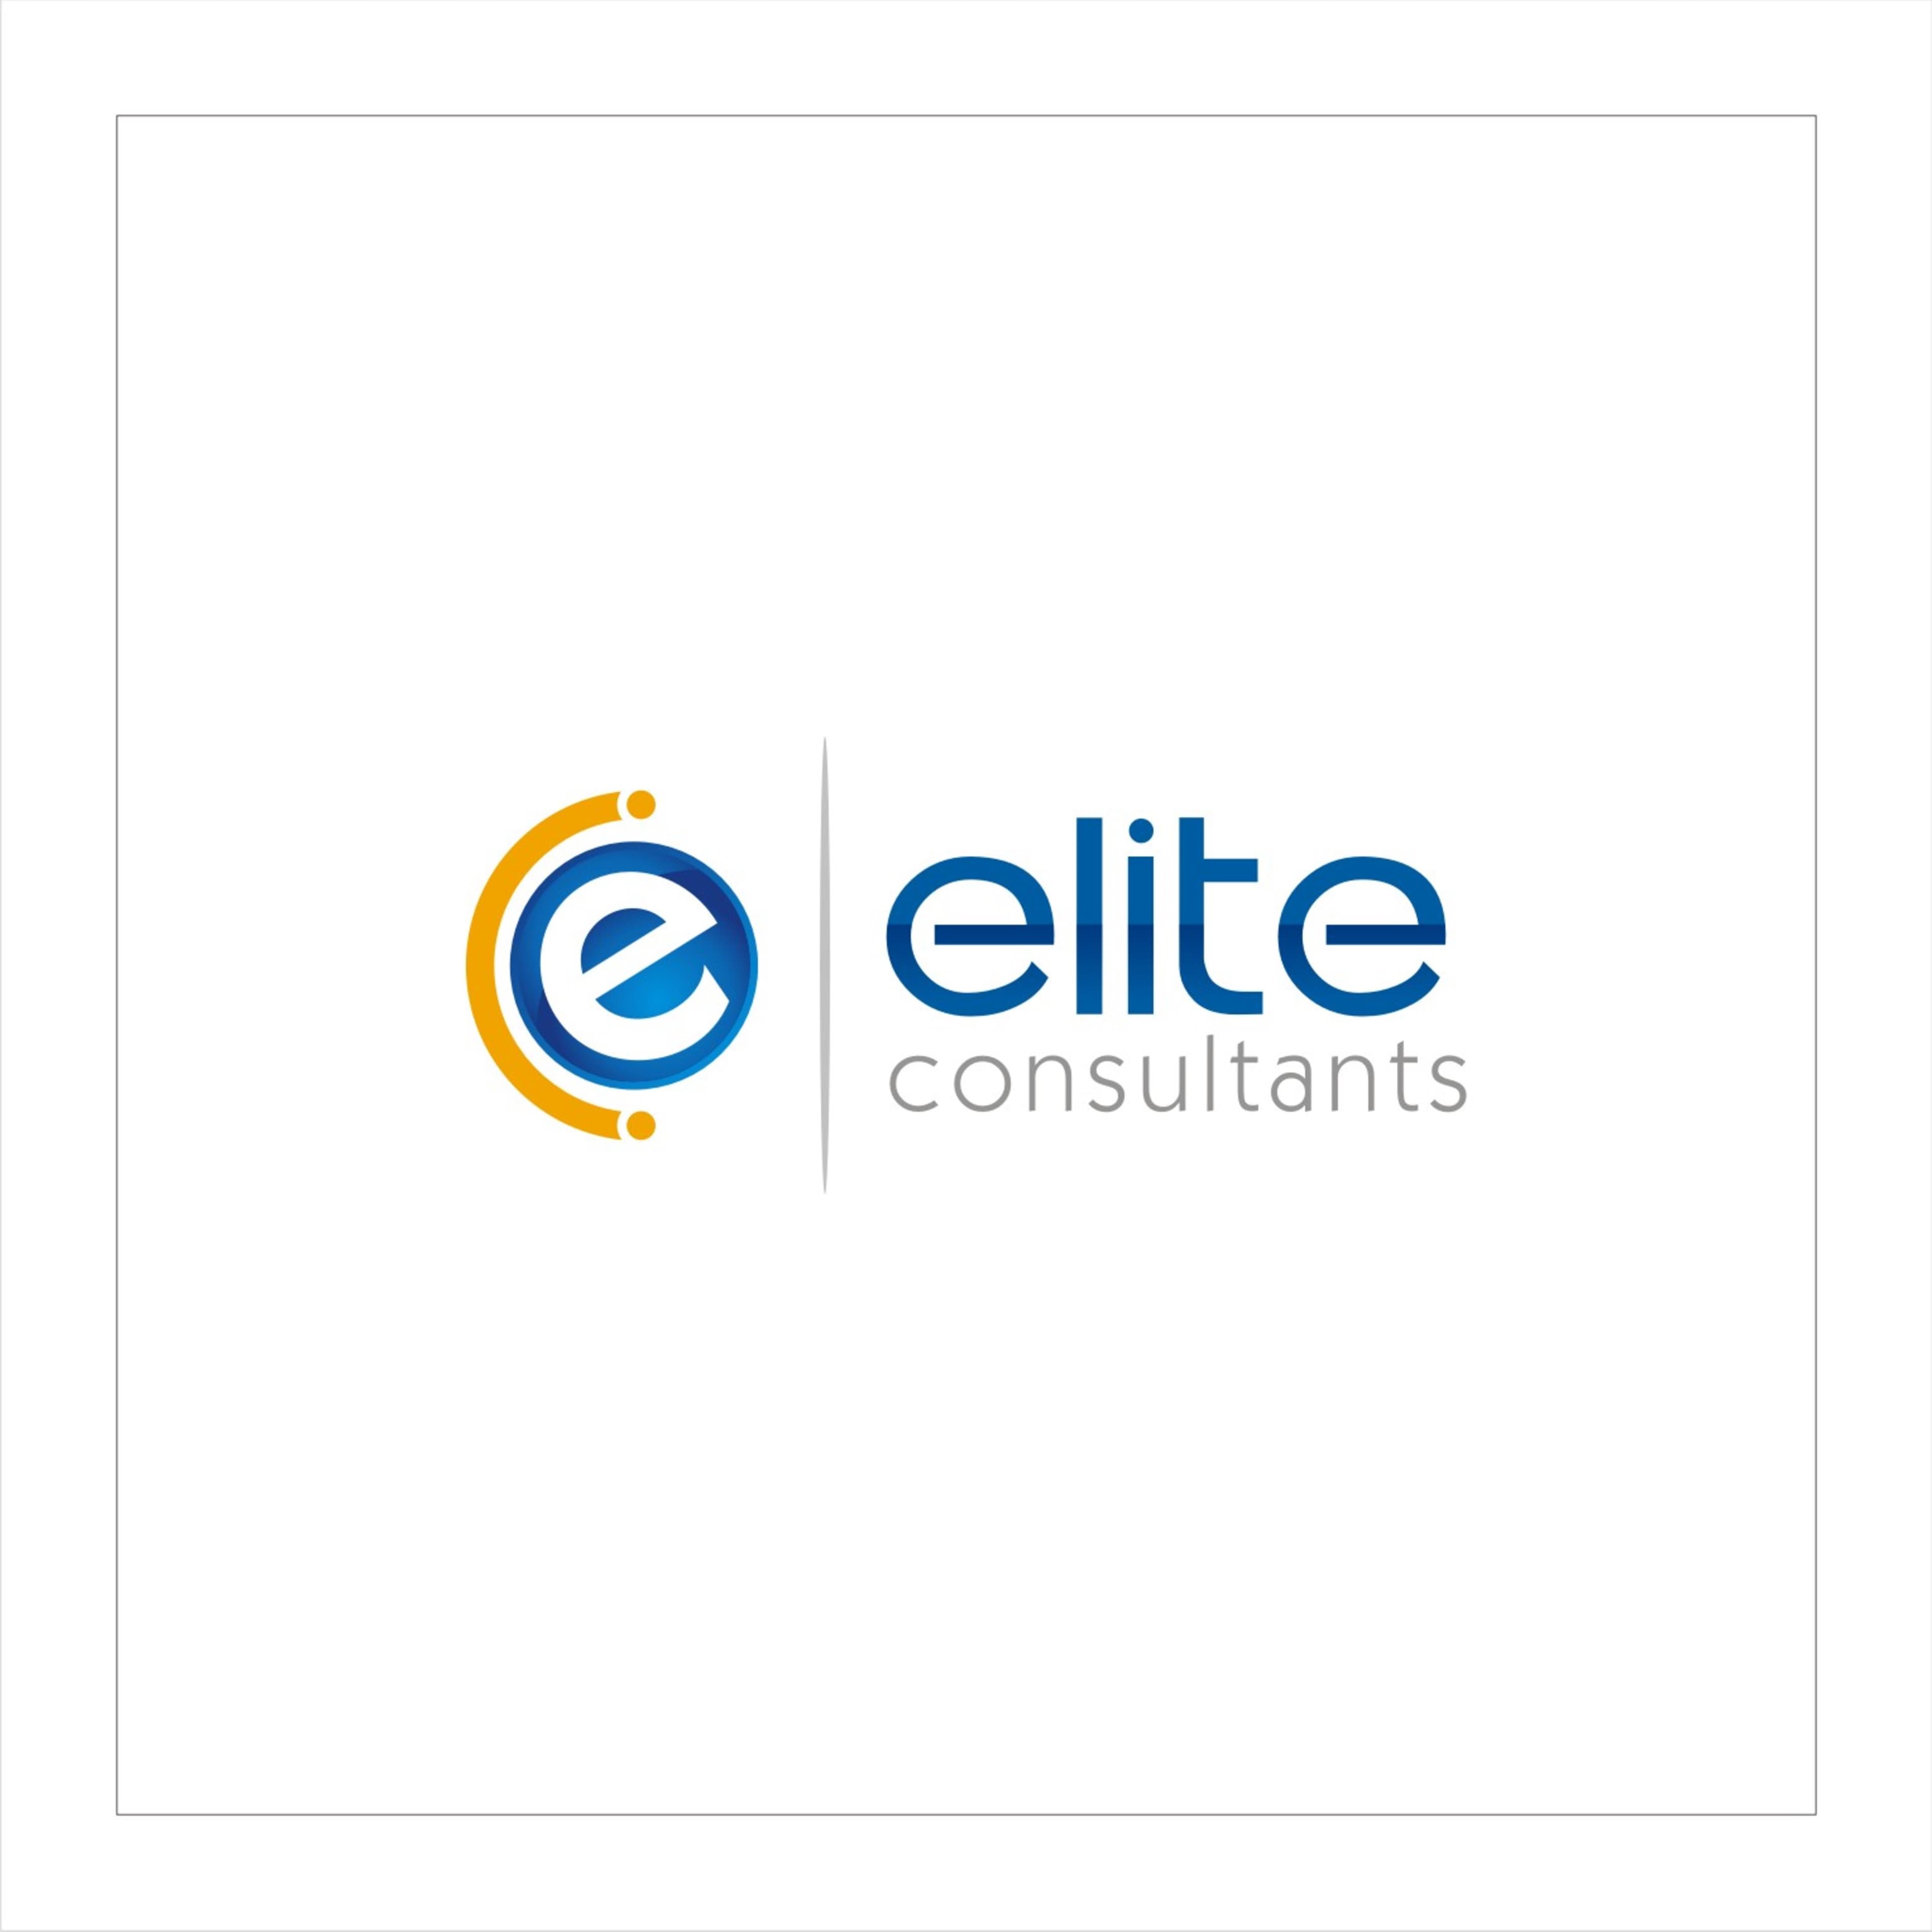 Elite Consultants's logo